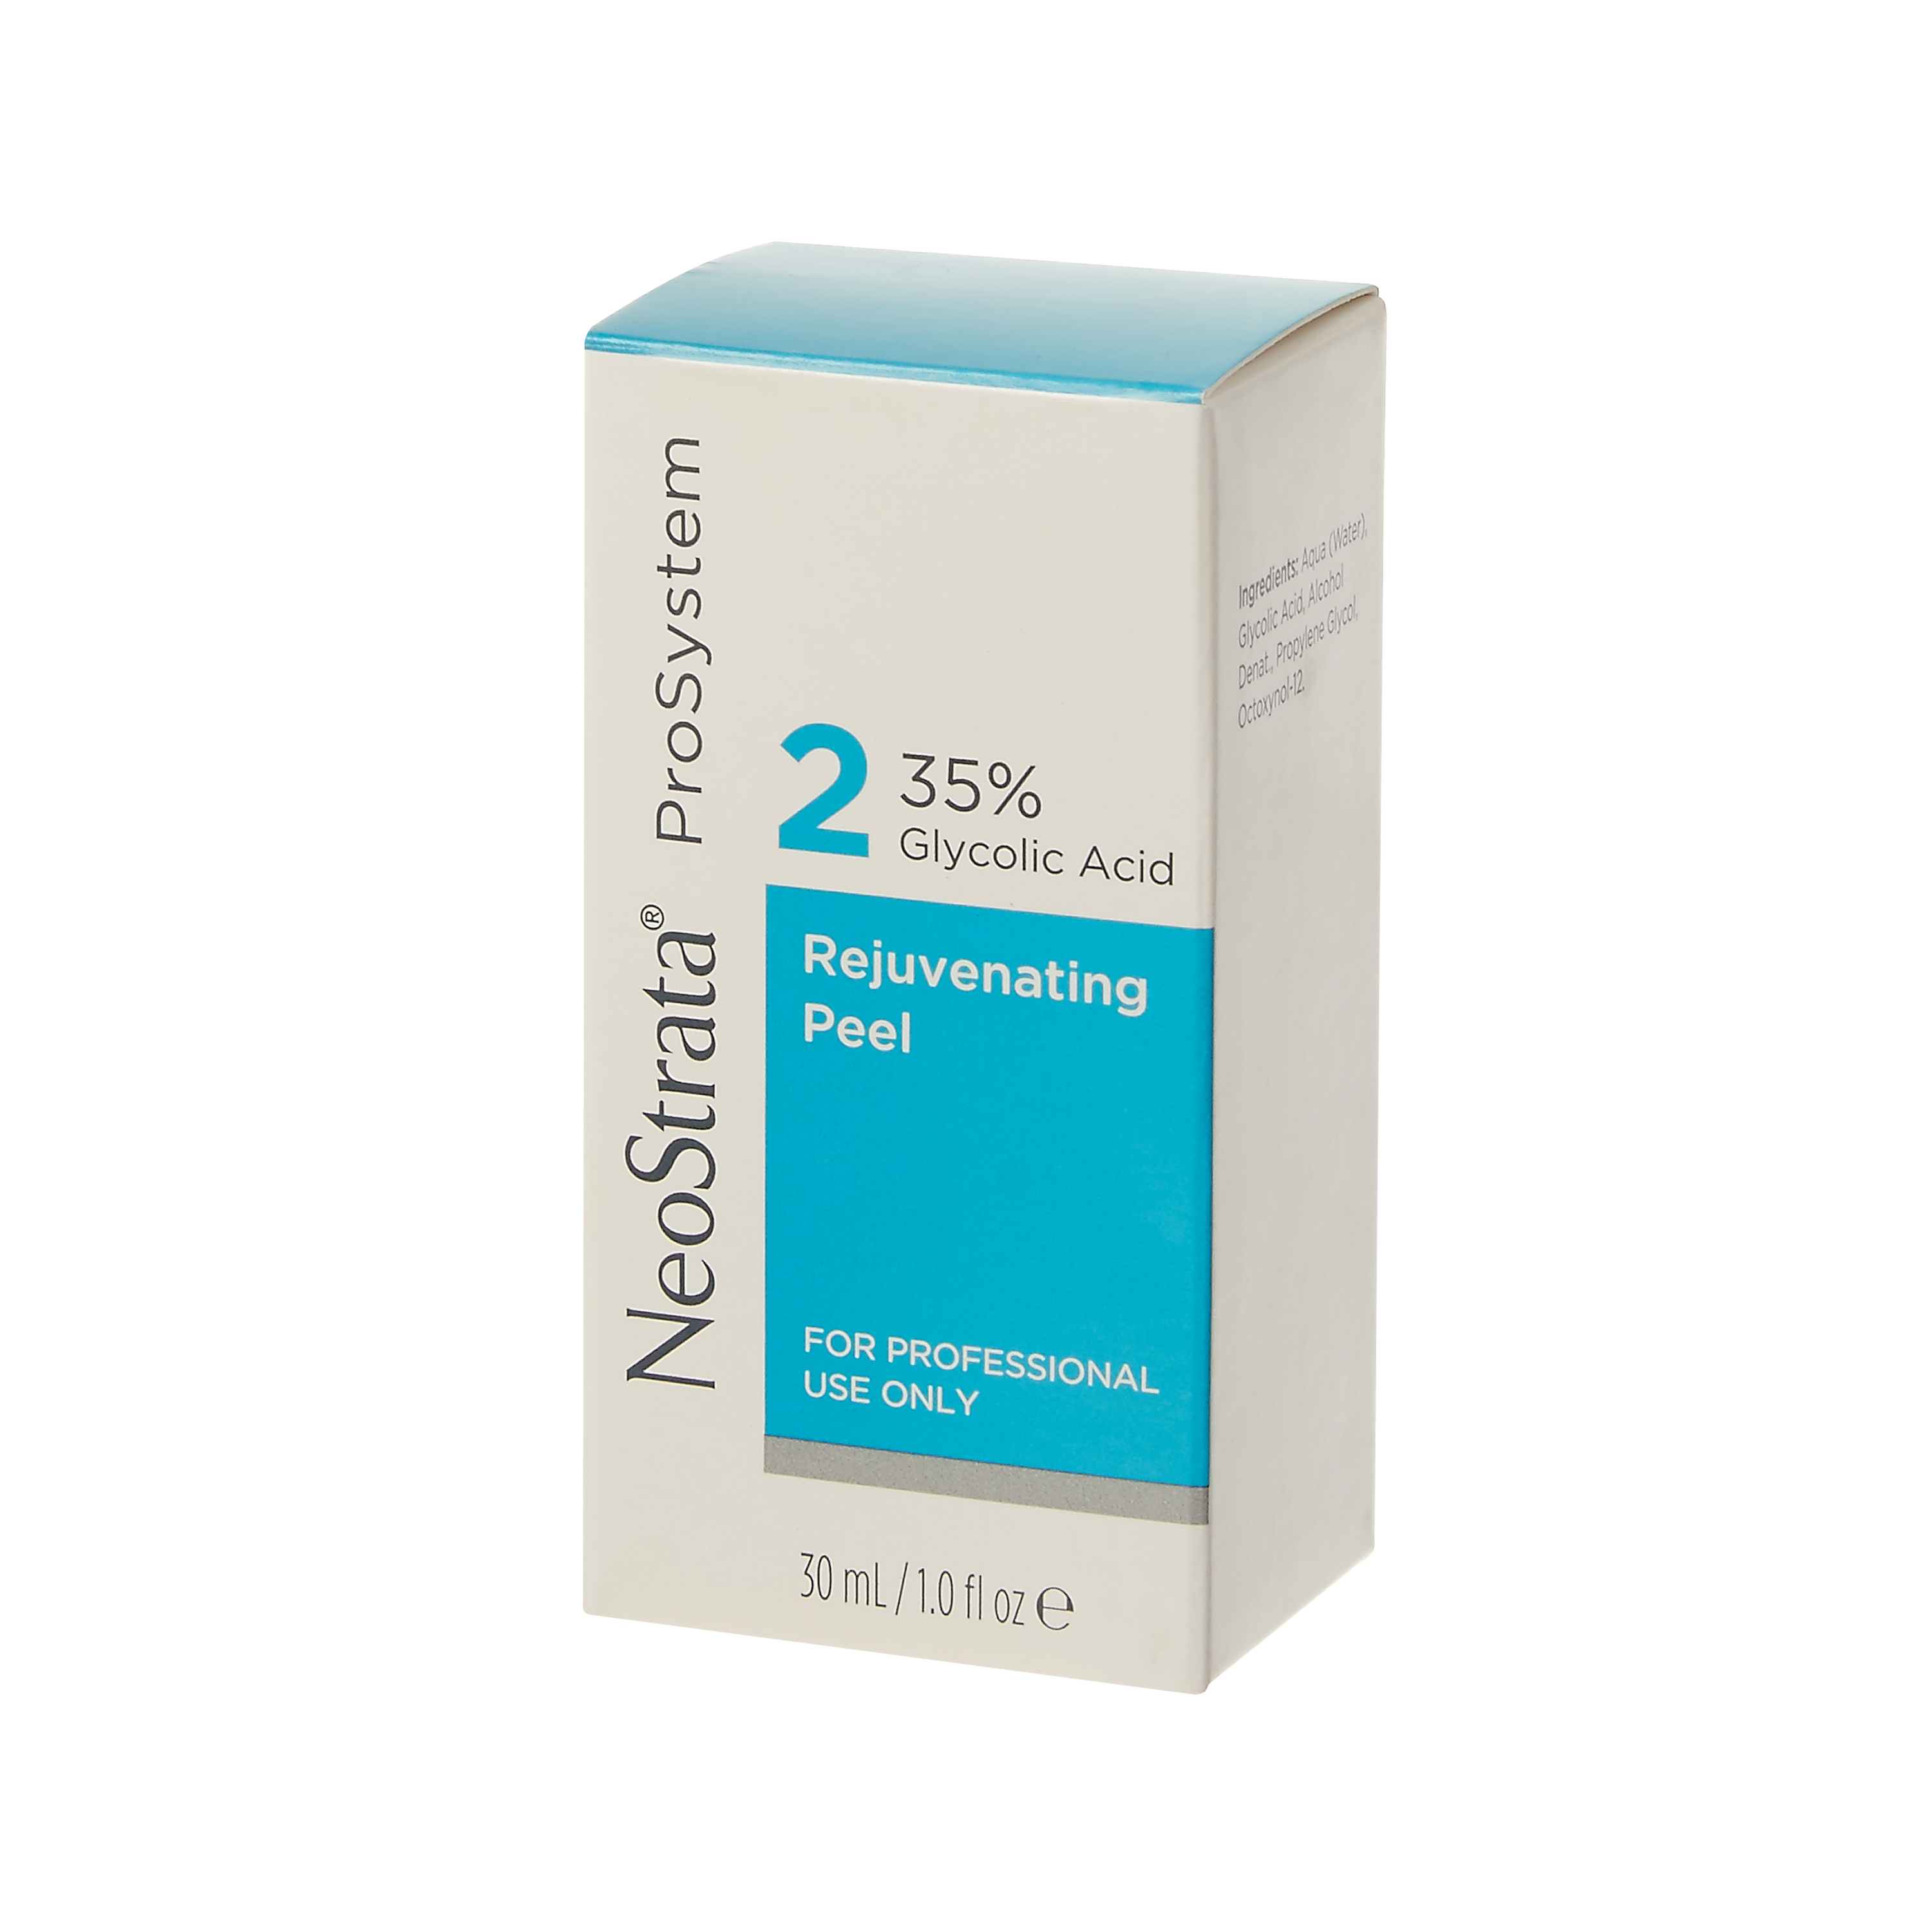 NeoStrata ProSystem 35% Glycolic Acid Rejuvenating Peel 